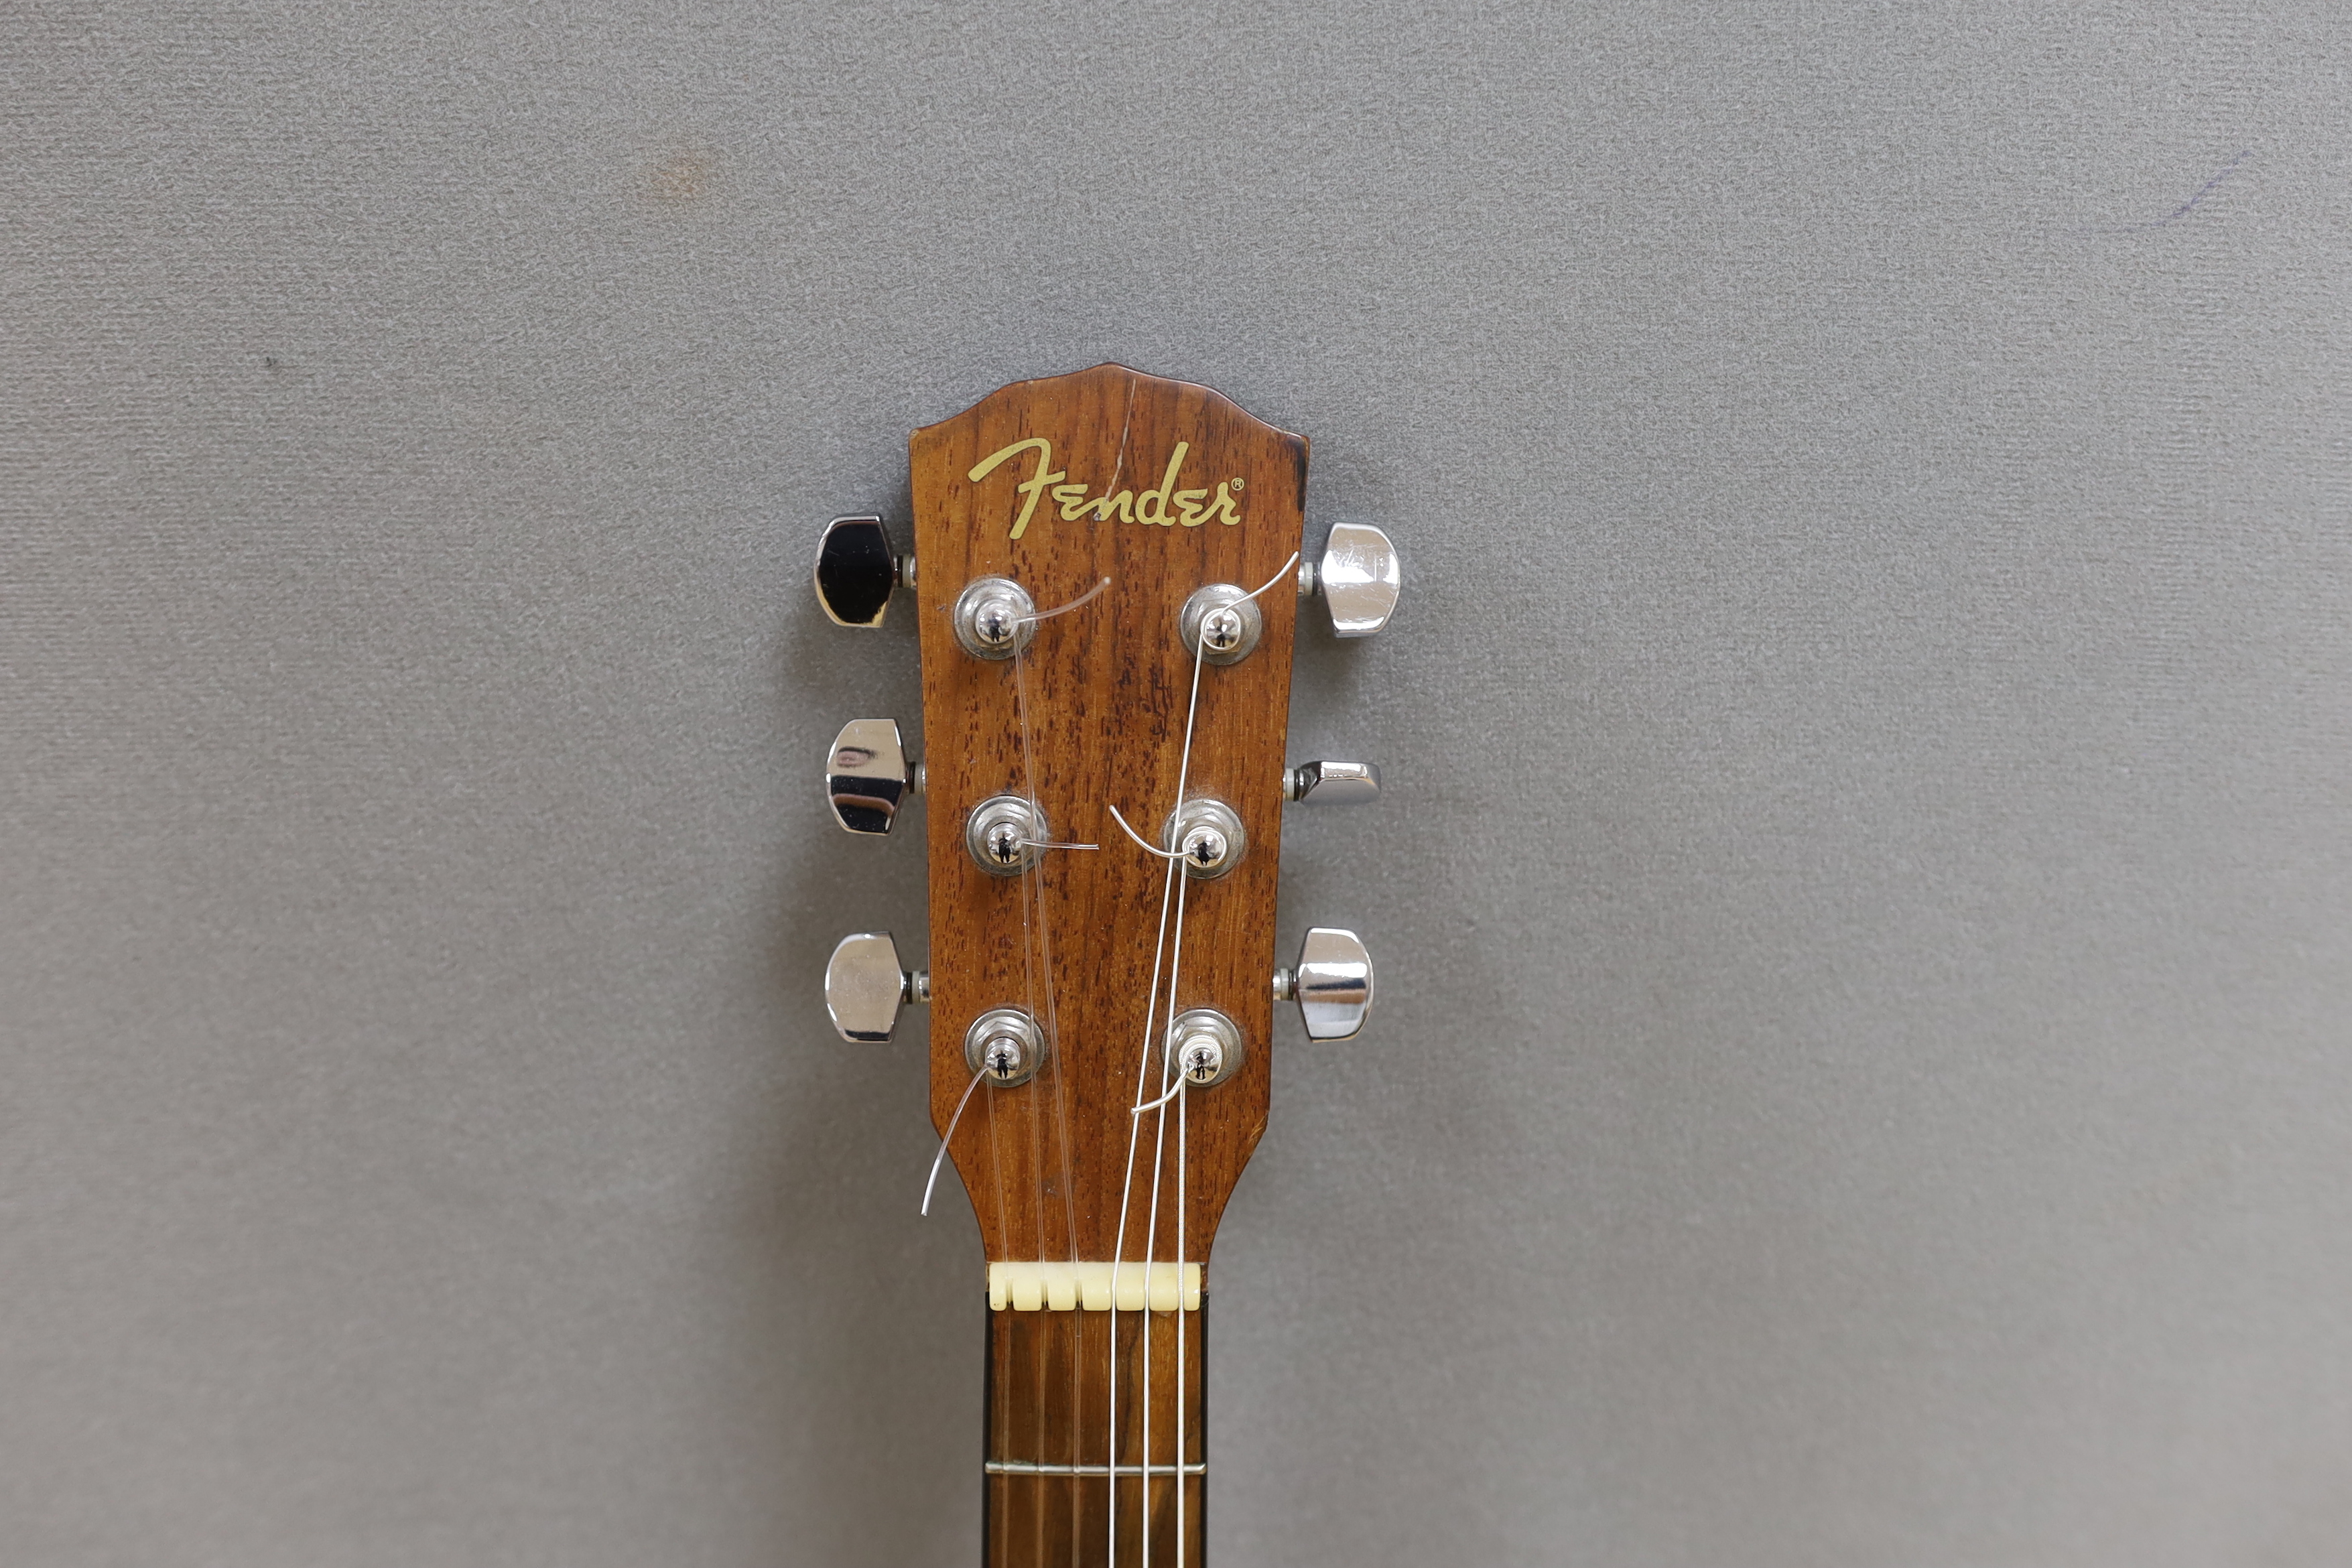 A Fender acoustic left handed guitar, in case